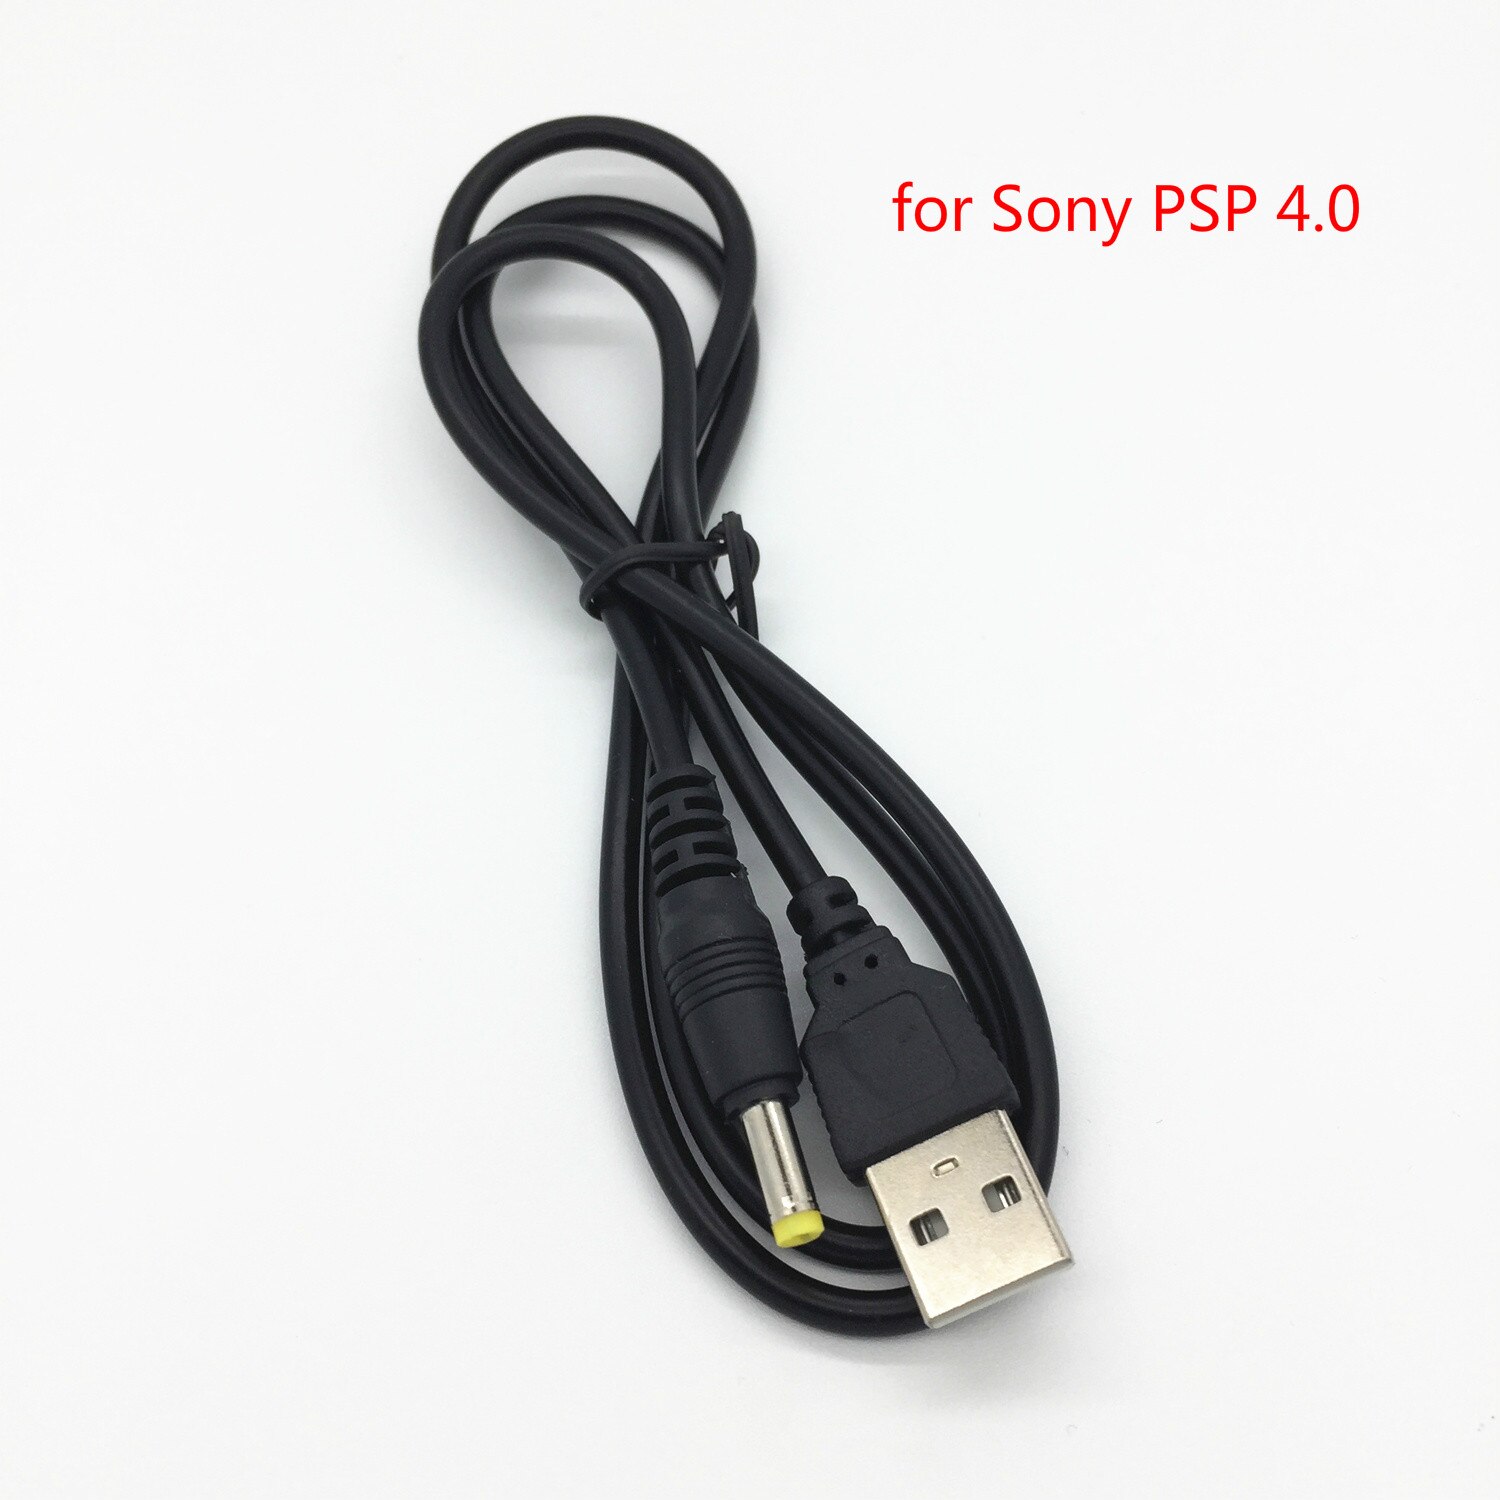 POWER Cáp Sạc 1m Chuyển Đổi Từ 5v Usb Sang Dc 4.0x1.7mm Cho Máy Sony Psp 4.0